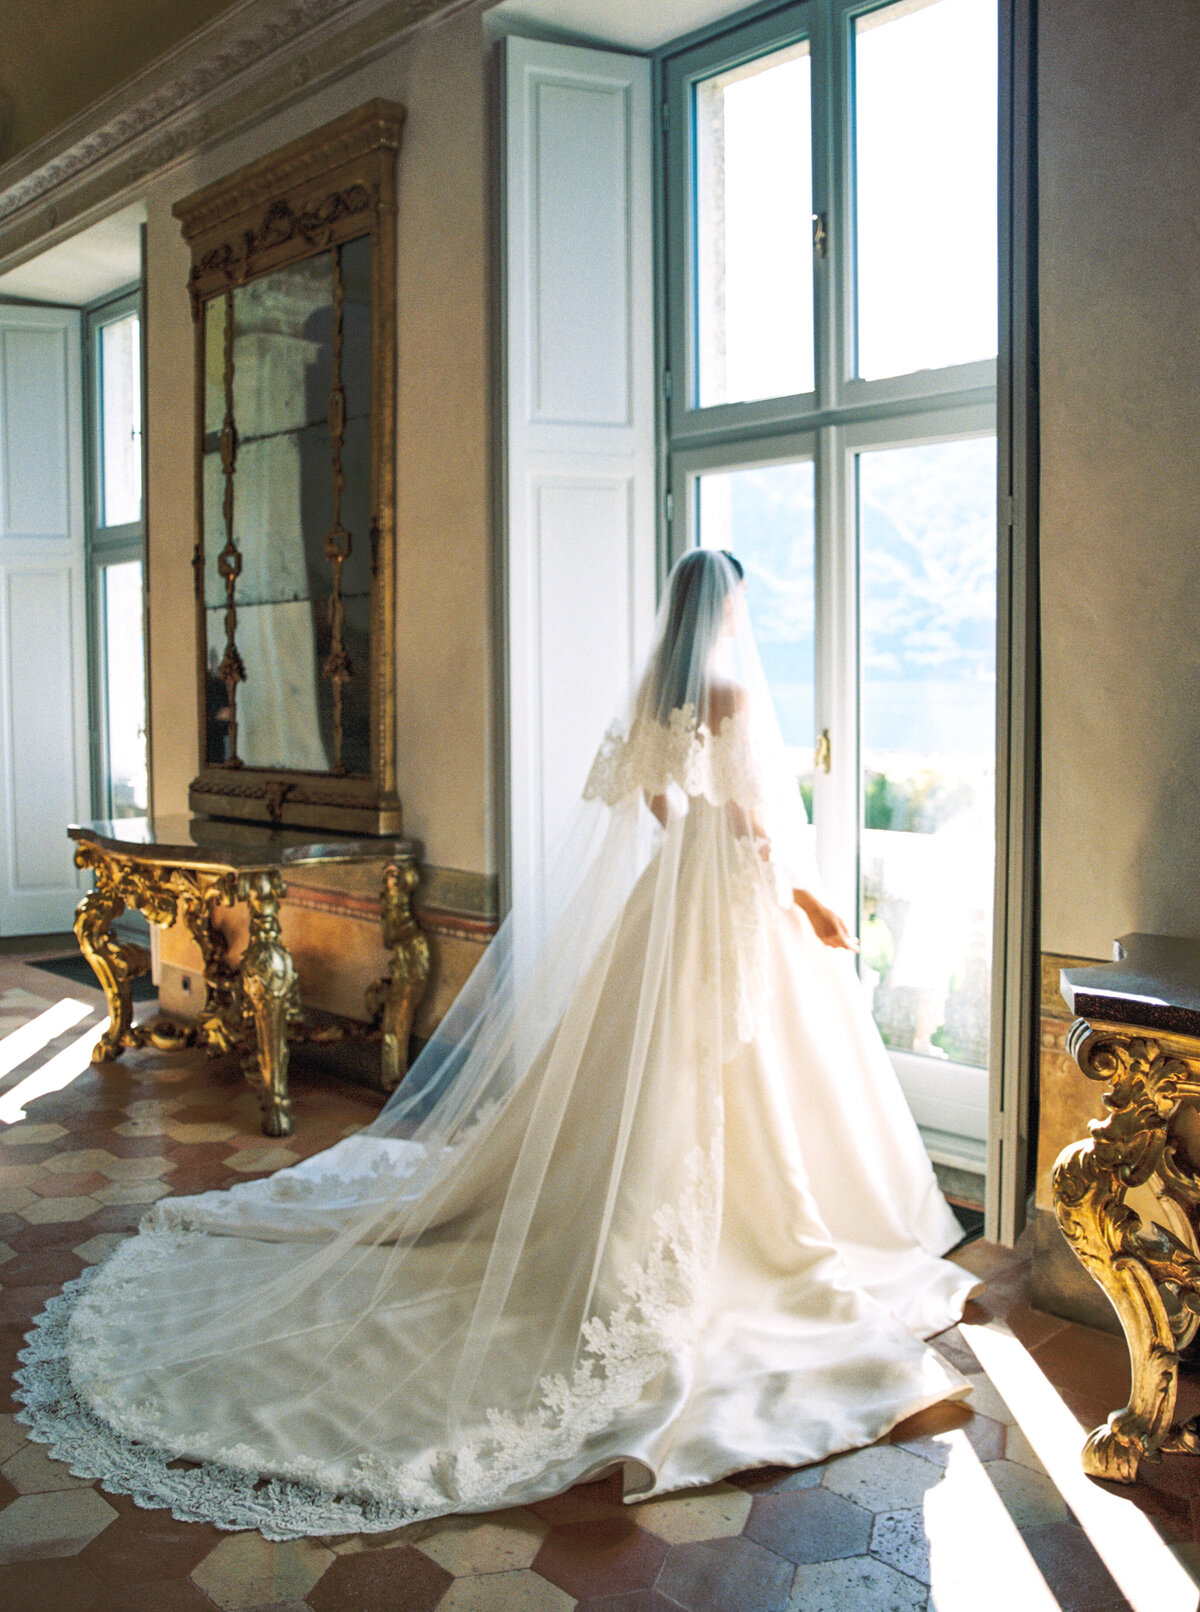 Villa Balbiano Wedding Lake Como Italy. Bride's wedding dress